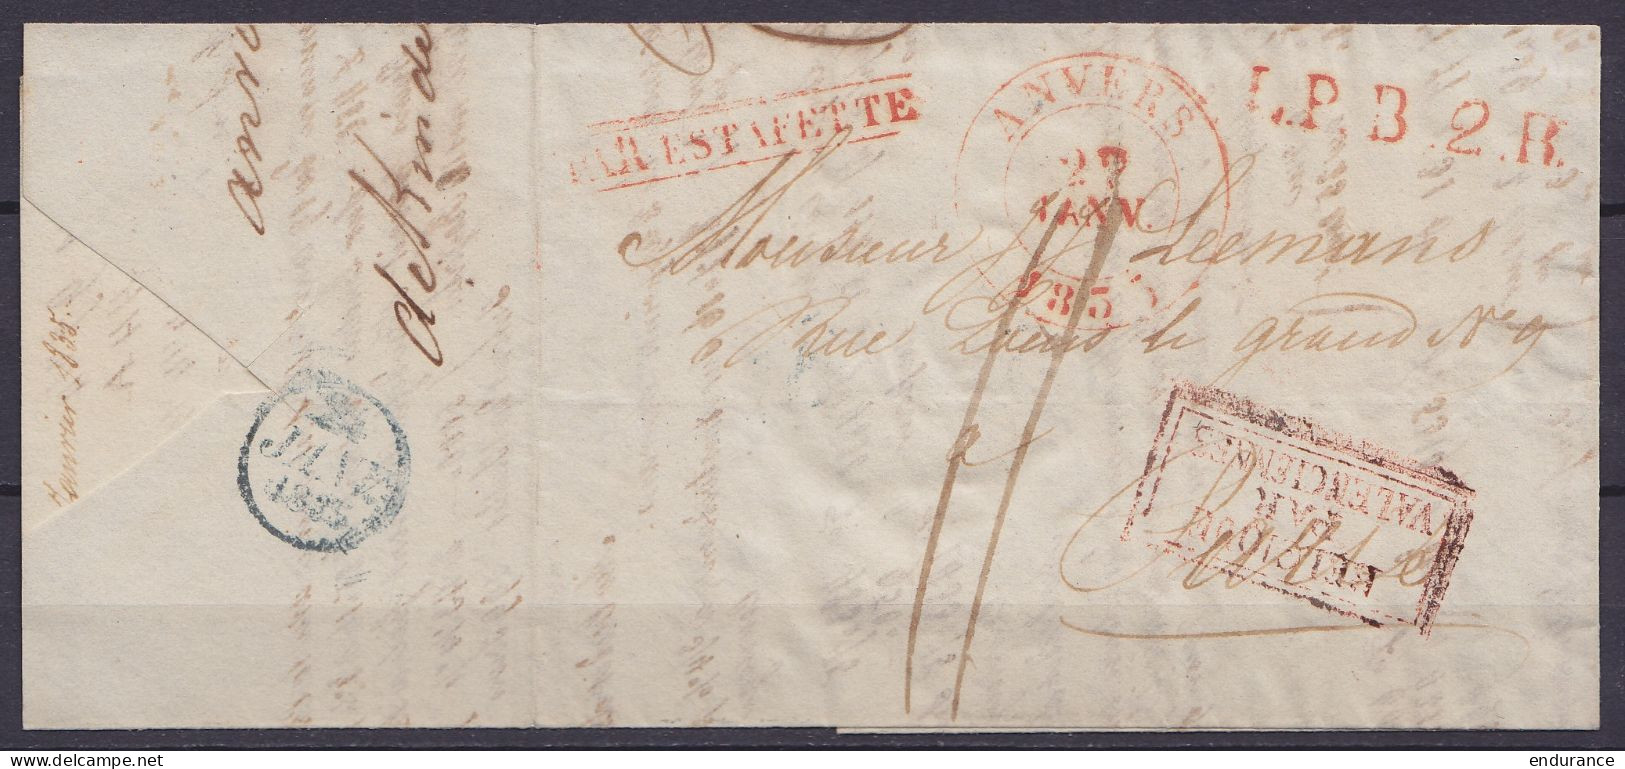 L. Càd ANVERS /22 JANV 1835 Pour PARIS - Griffes "L.P.B.2.R." & [PAR ESTAFETTE] [BELGIQUE PAR VALENCIENNES] - Port "11" - 1830-1849 (Belgica Independiente)